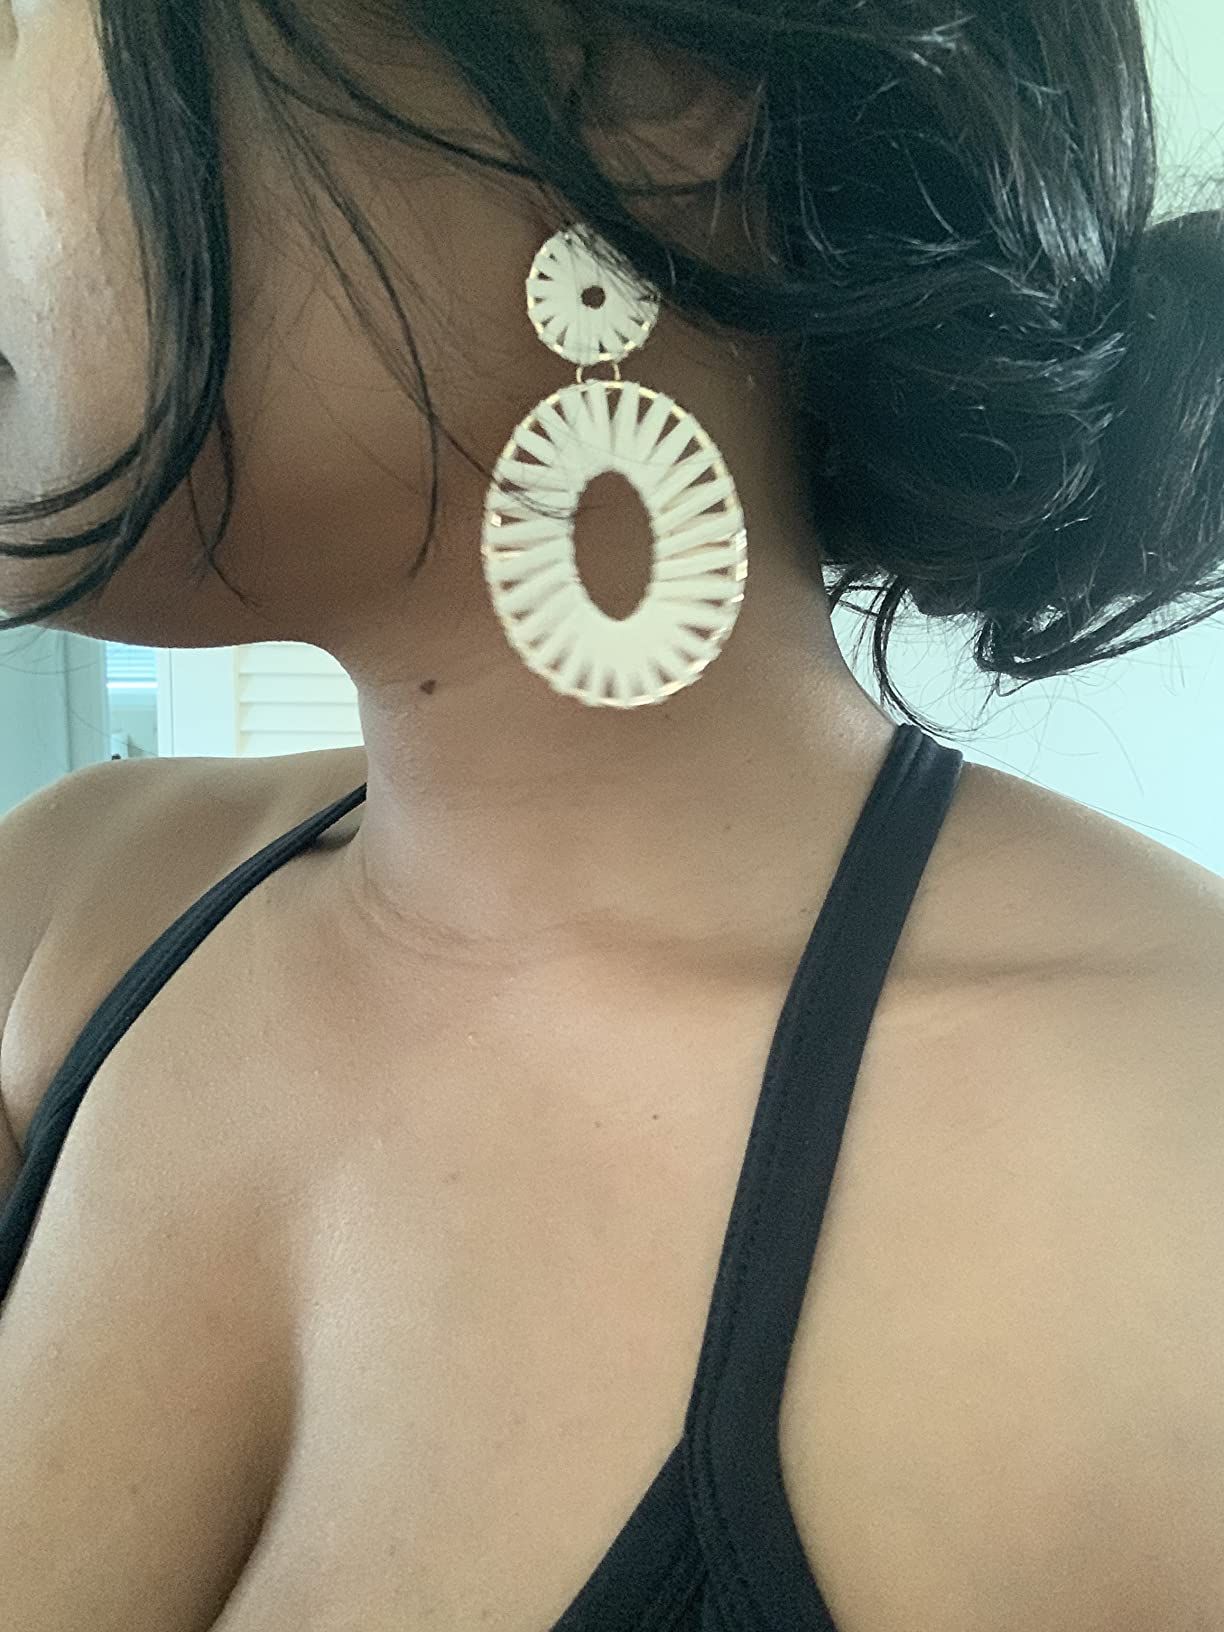 Raffia Tassel Hoop Drop Earrings Handmade Fashion Statement Jewelry for Women Girls | Amazon (US)